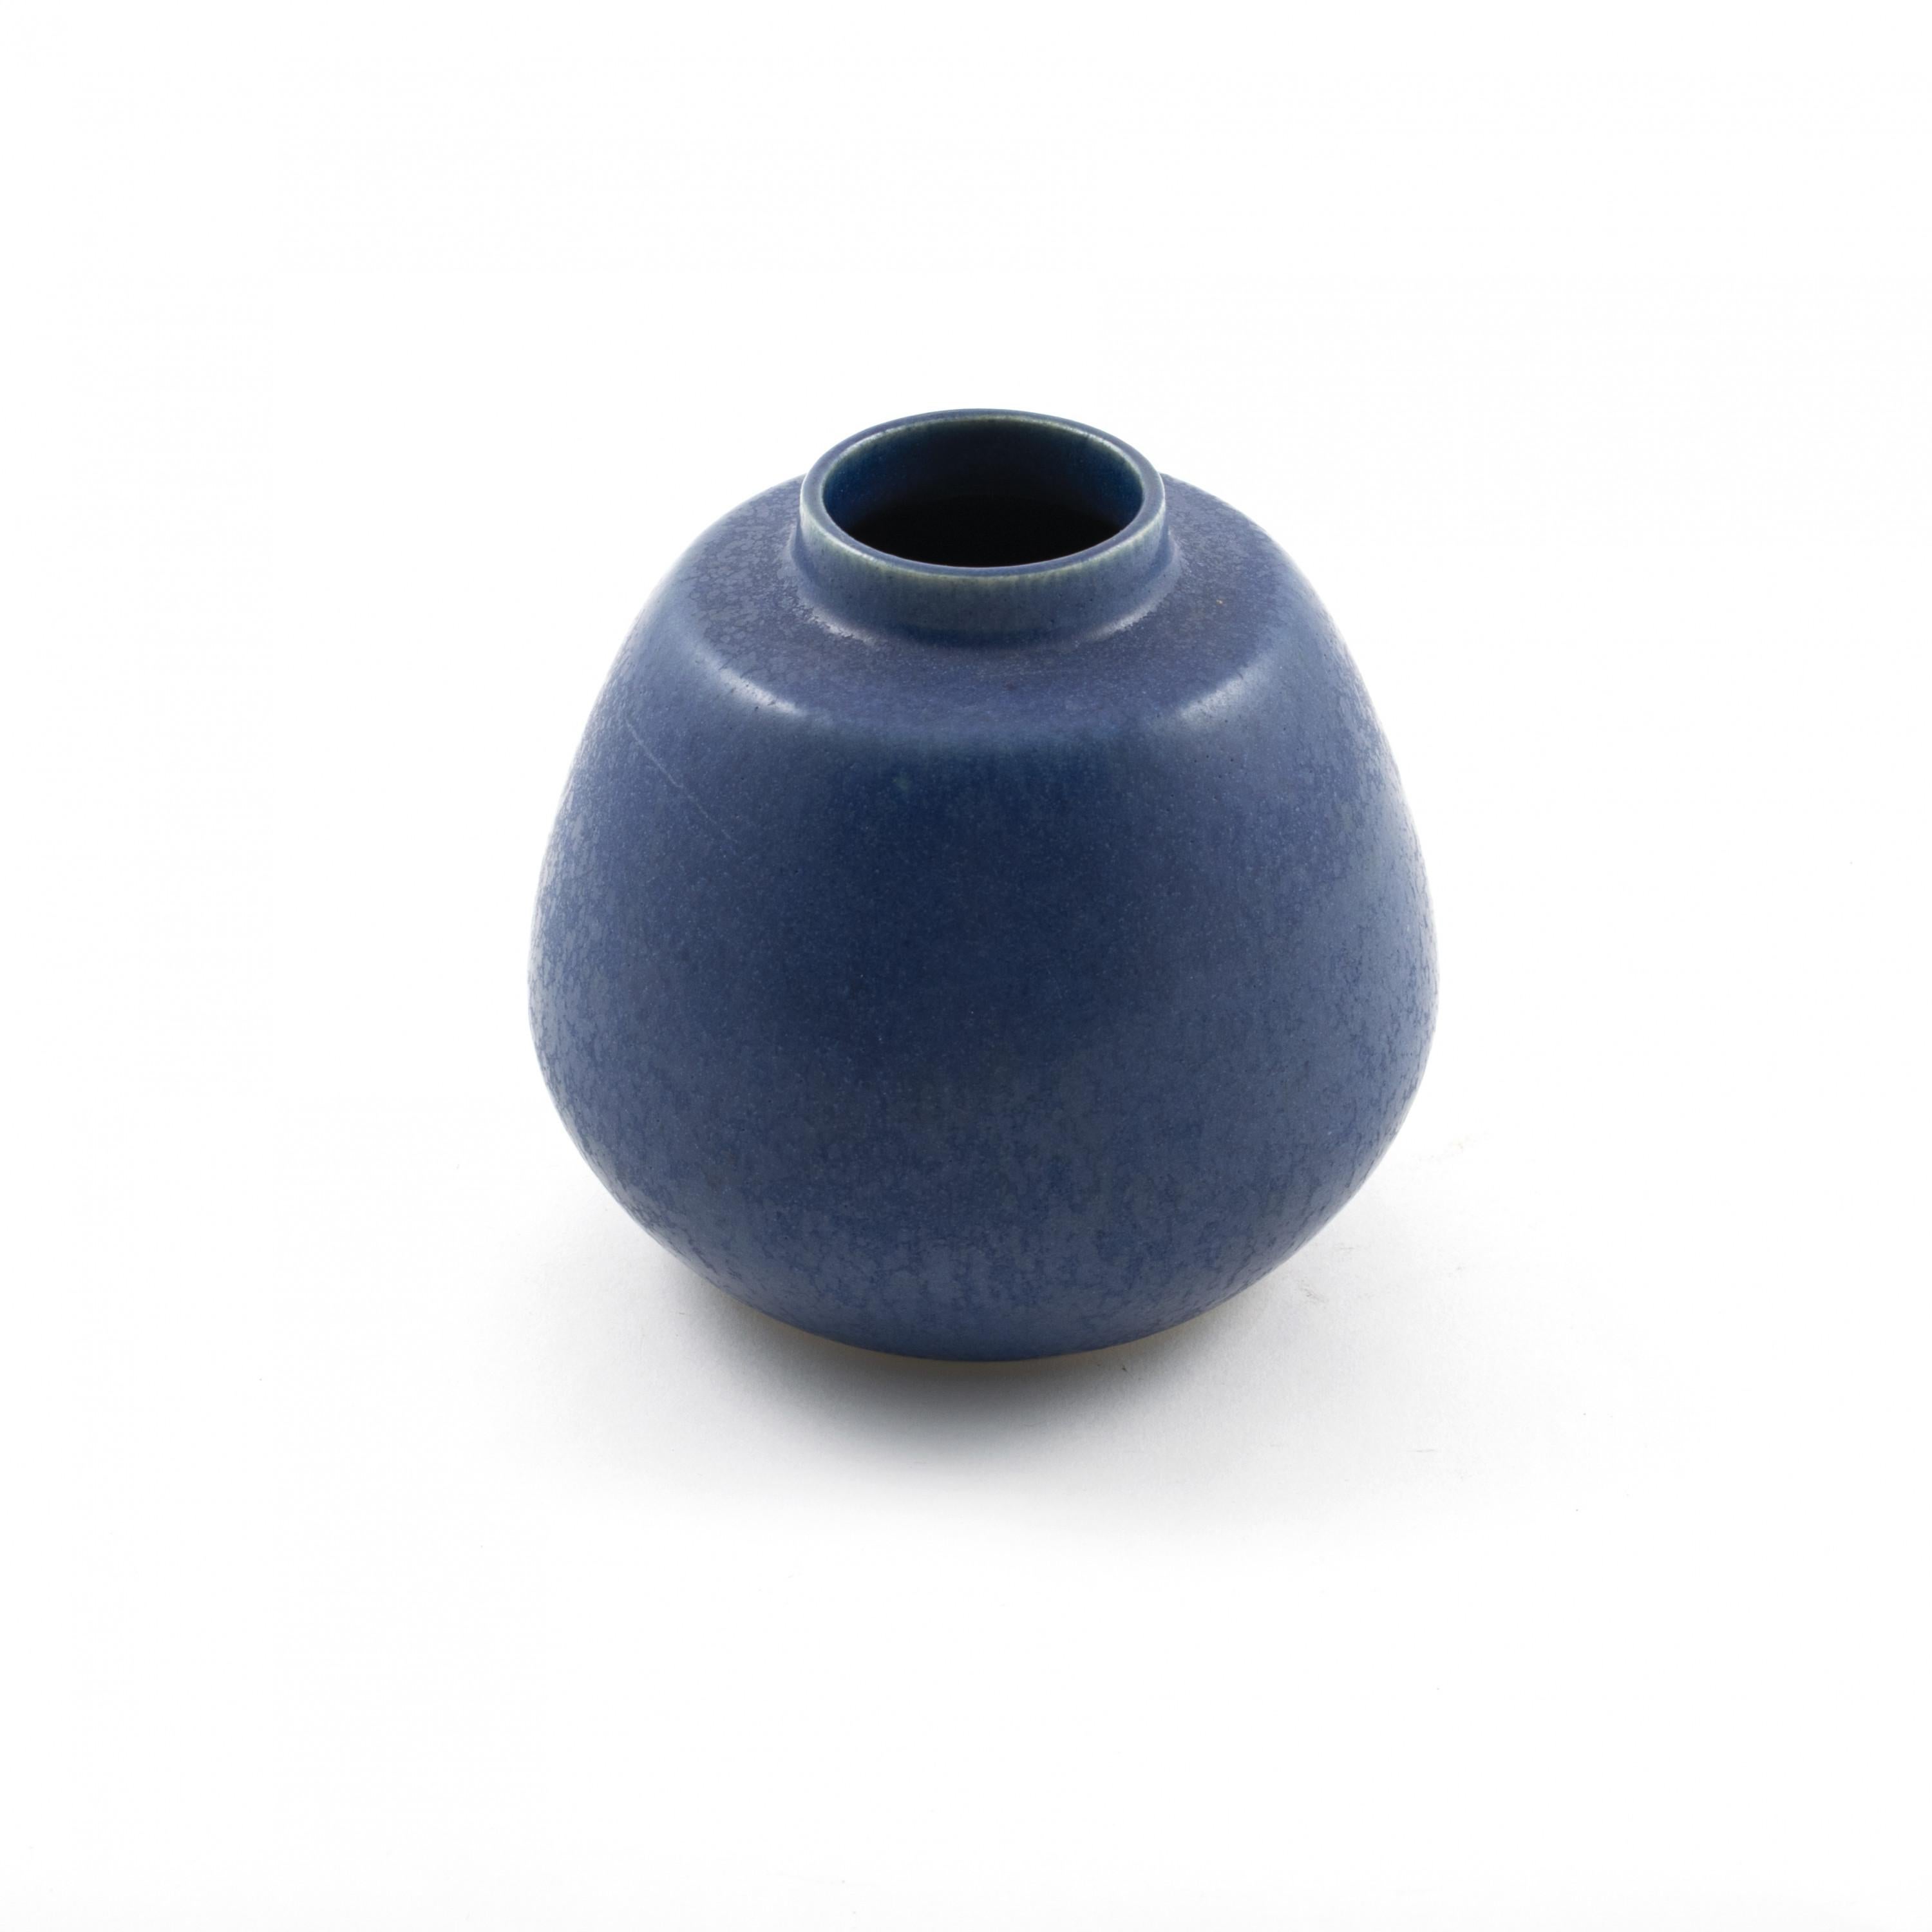 Eigil Hinrichsen 1921-1999.
Stoneware vase by Eigil Hinrichsen with blue glaze.
Monogram signed
Denmark, 1950-1960.